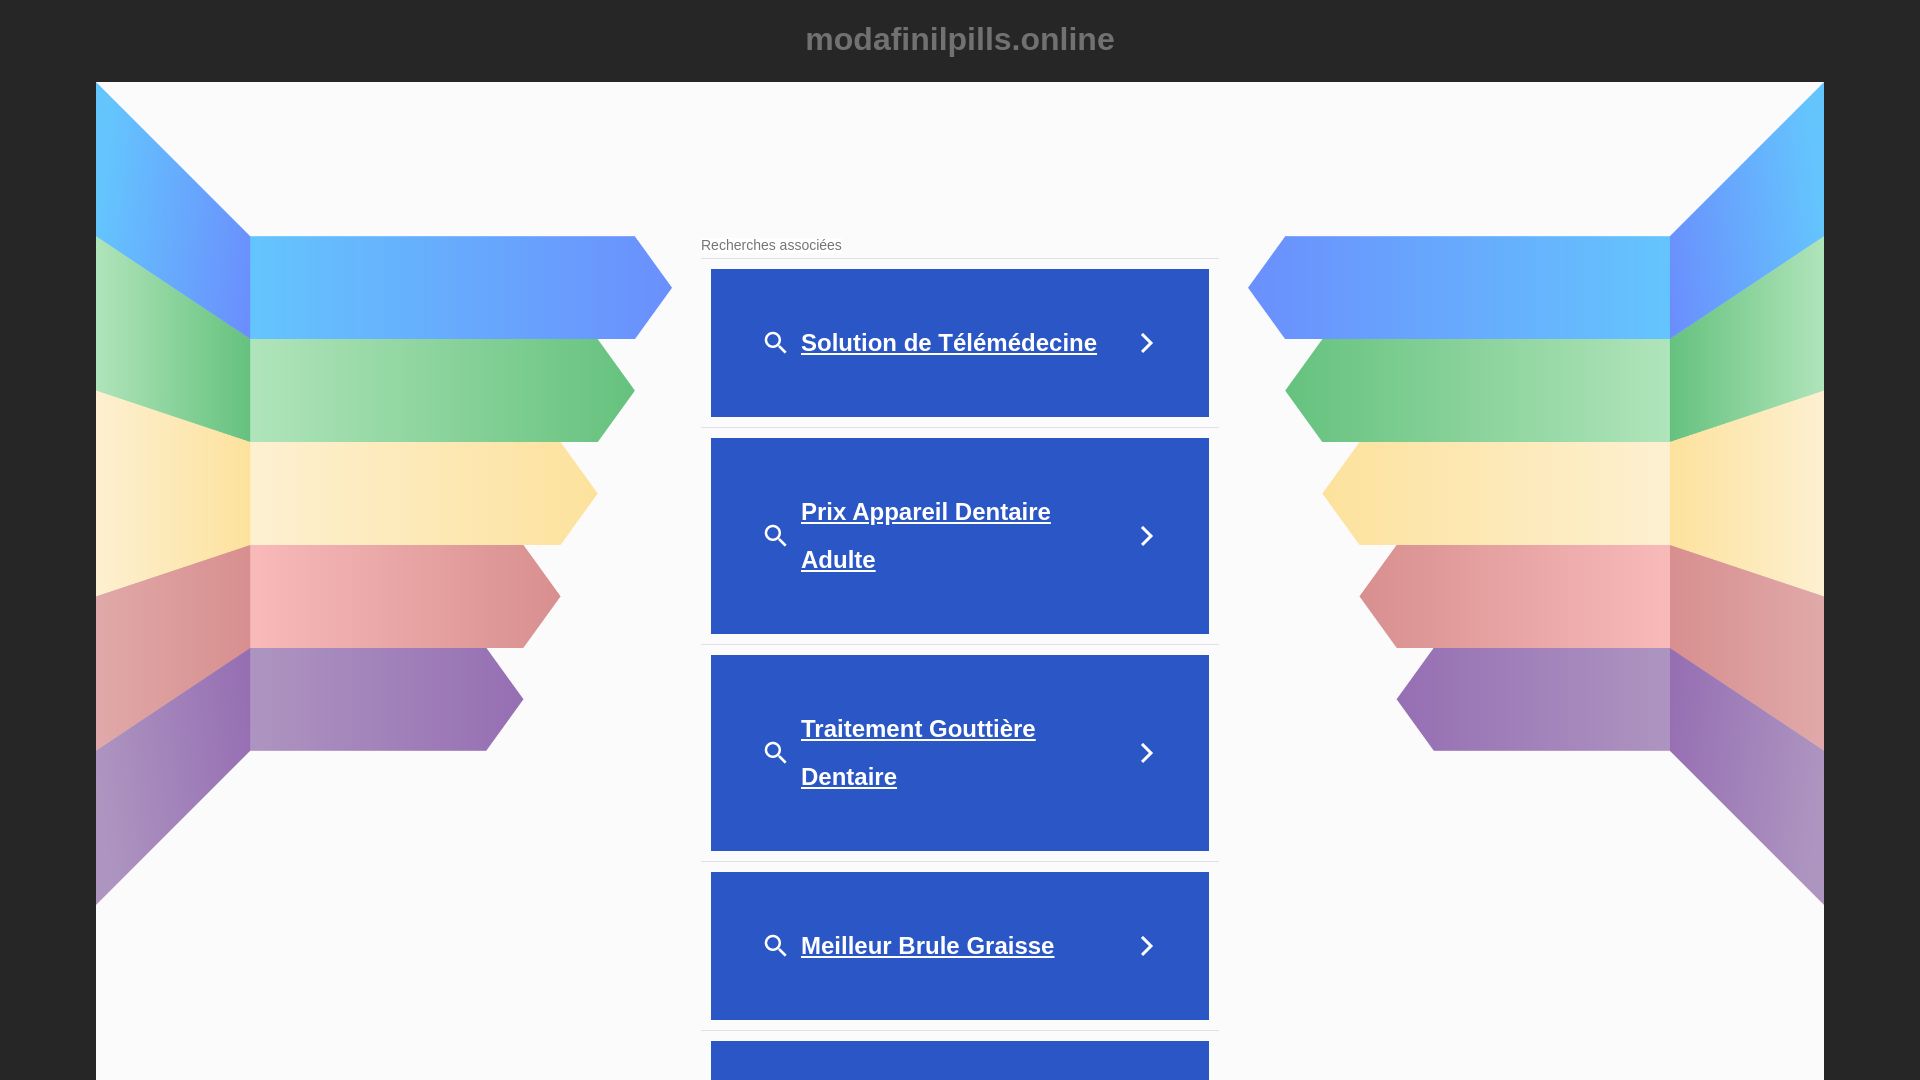 Webseitenstatus modafinilpills.online ist   ONLINE